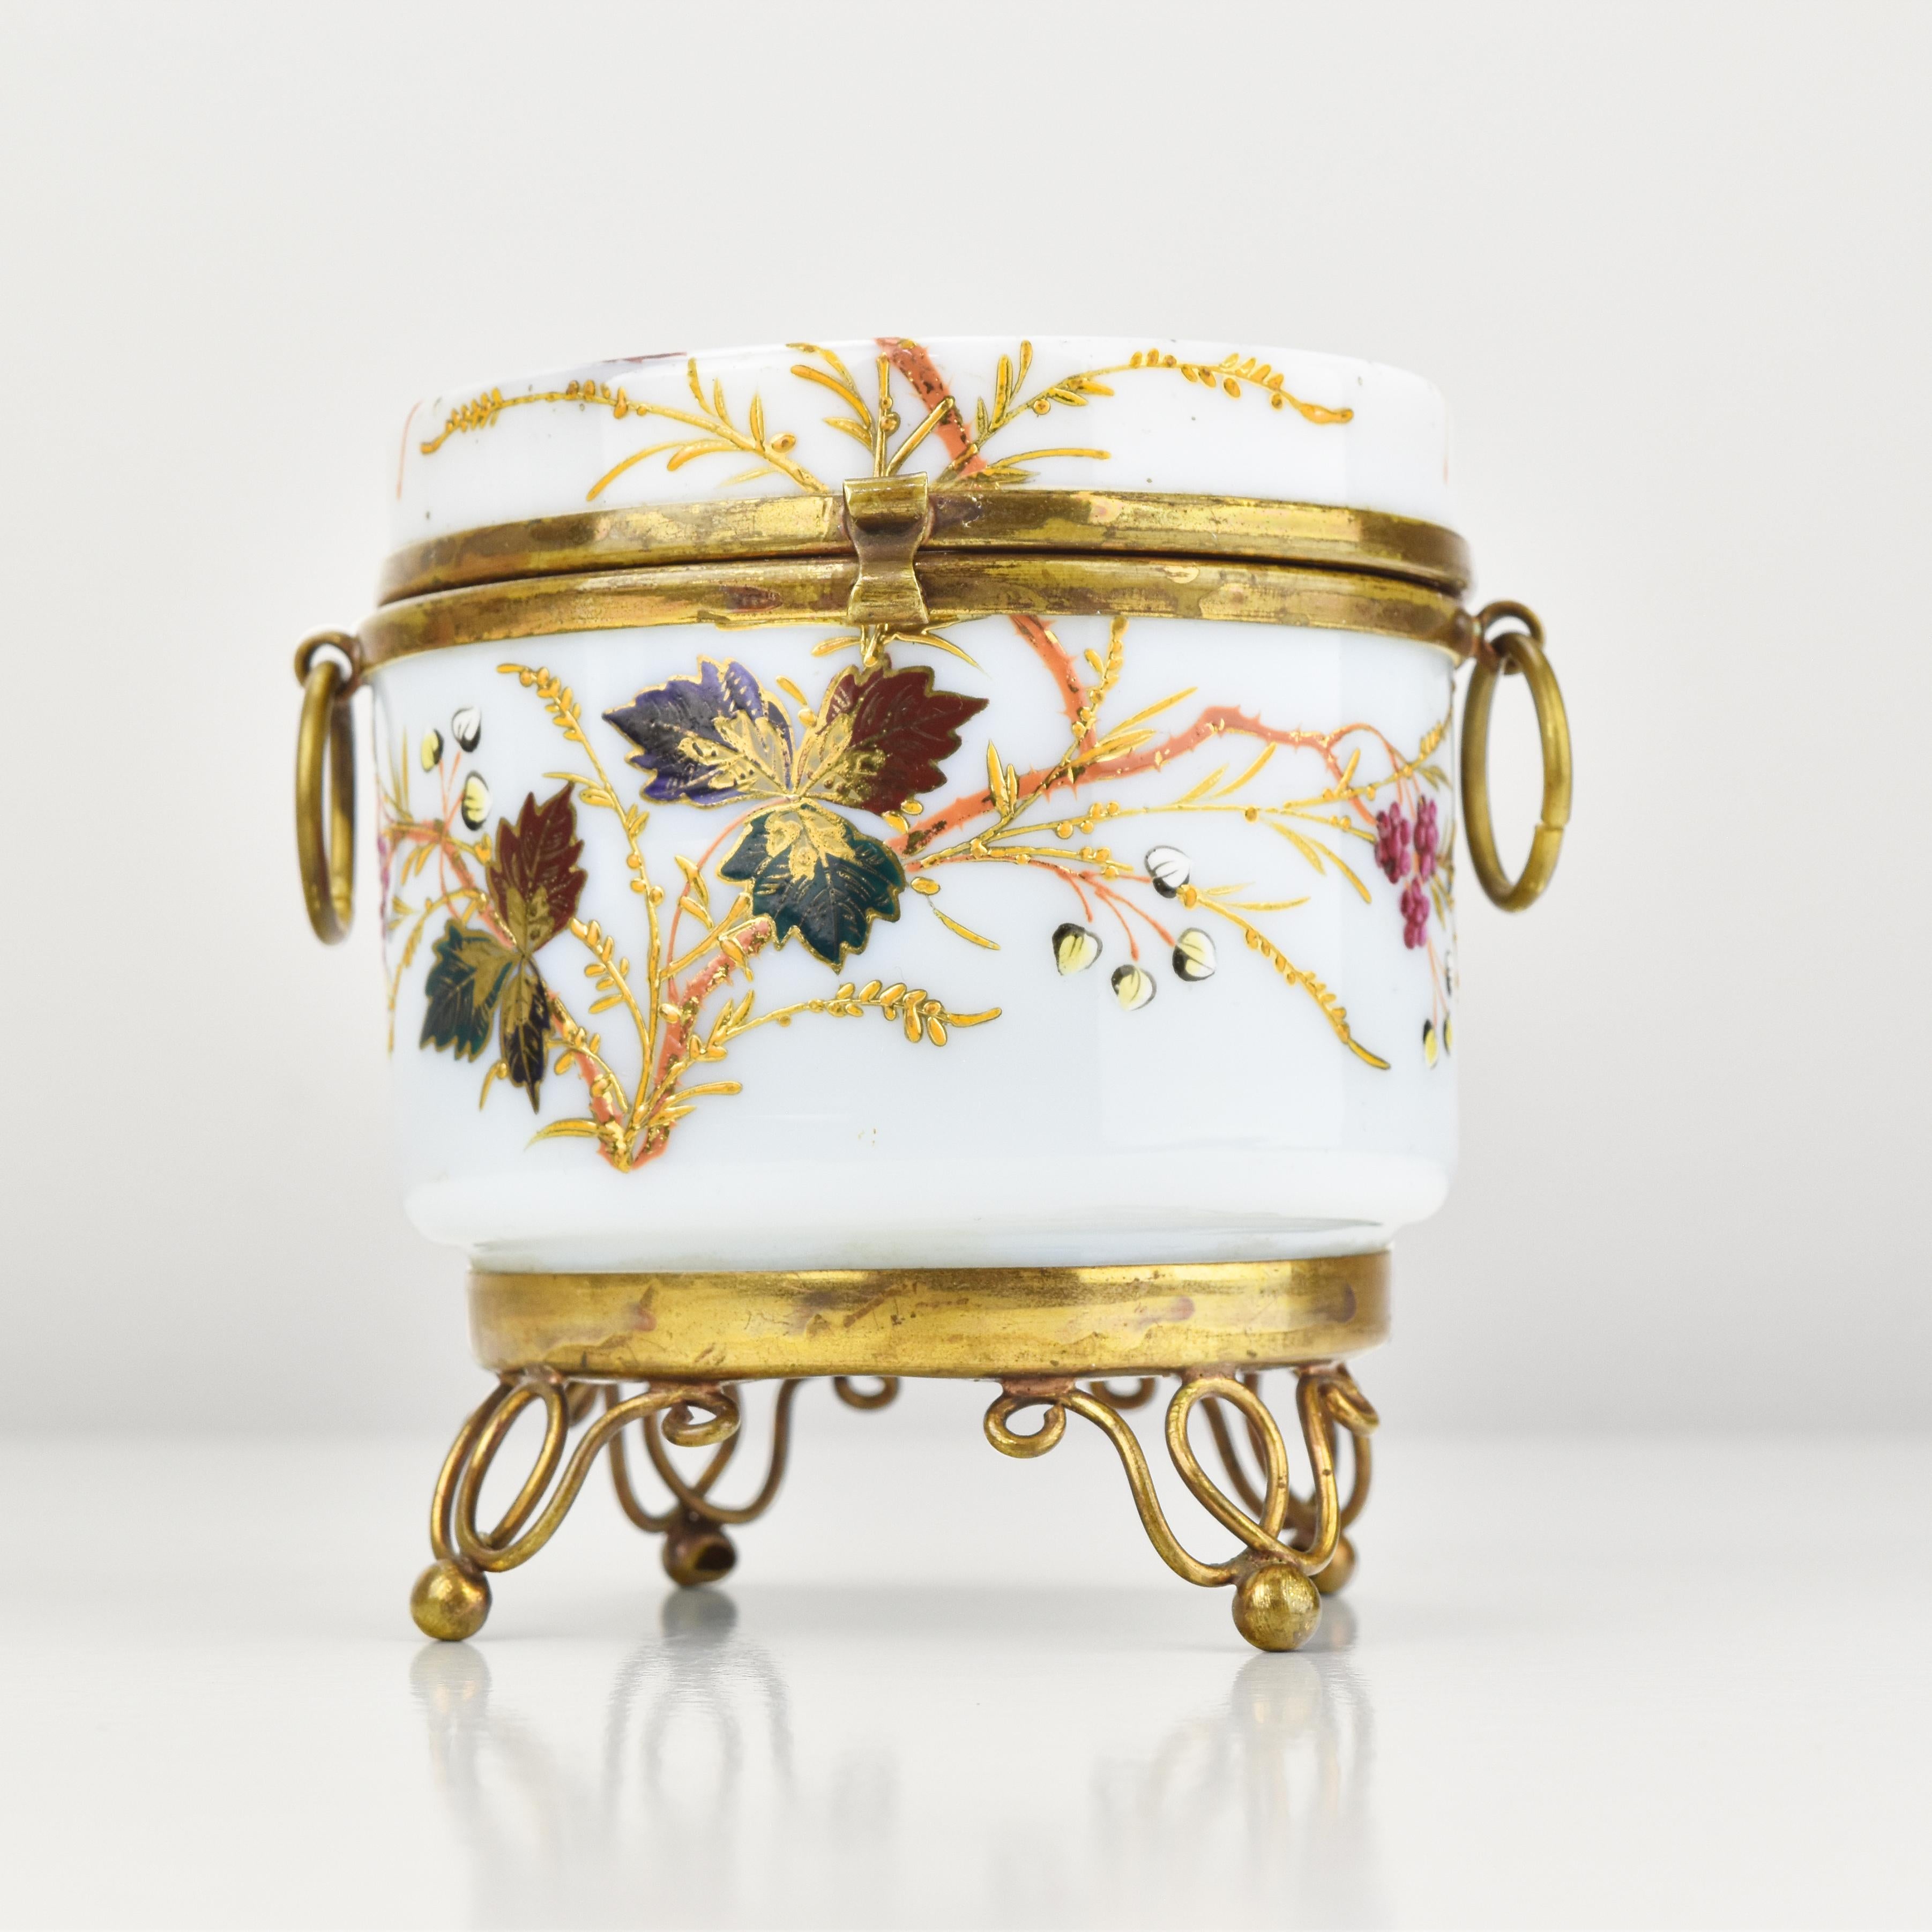 Diese antike viktorianische Opalglas-Schmuckschatulle ist ein echtes Zeugnis der Opulenz und Eleganz dieser Epoche.

Das Prunkstück ist zweifellos die exquisite florale Emaillemalerei, die die Oberfläche mit kunstvollen Details und leuchtenden